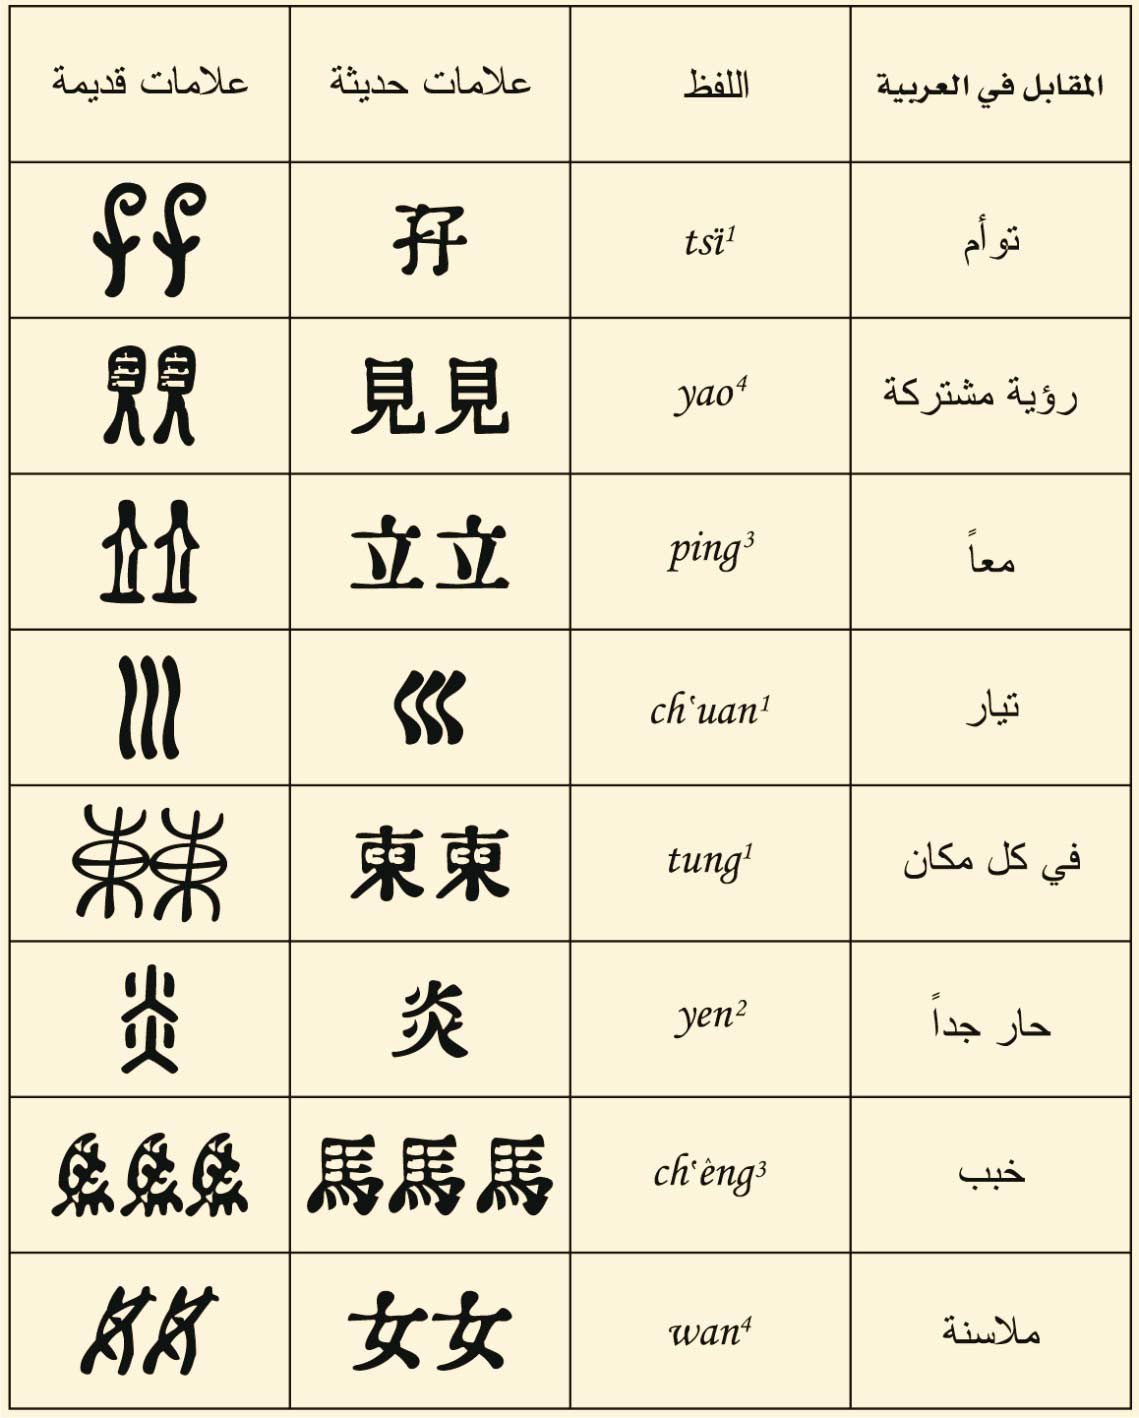 اللغة الصينية: لغة المستقبل وثقافة حافظة على تقاليدها - الحروف والنطق